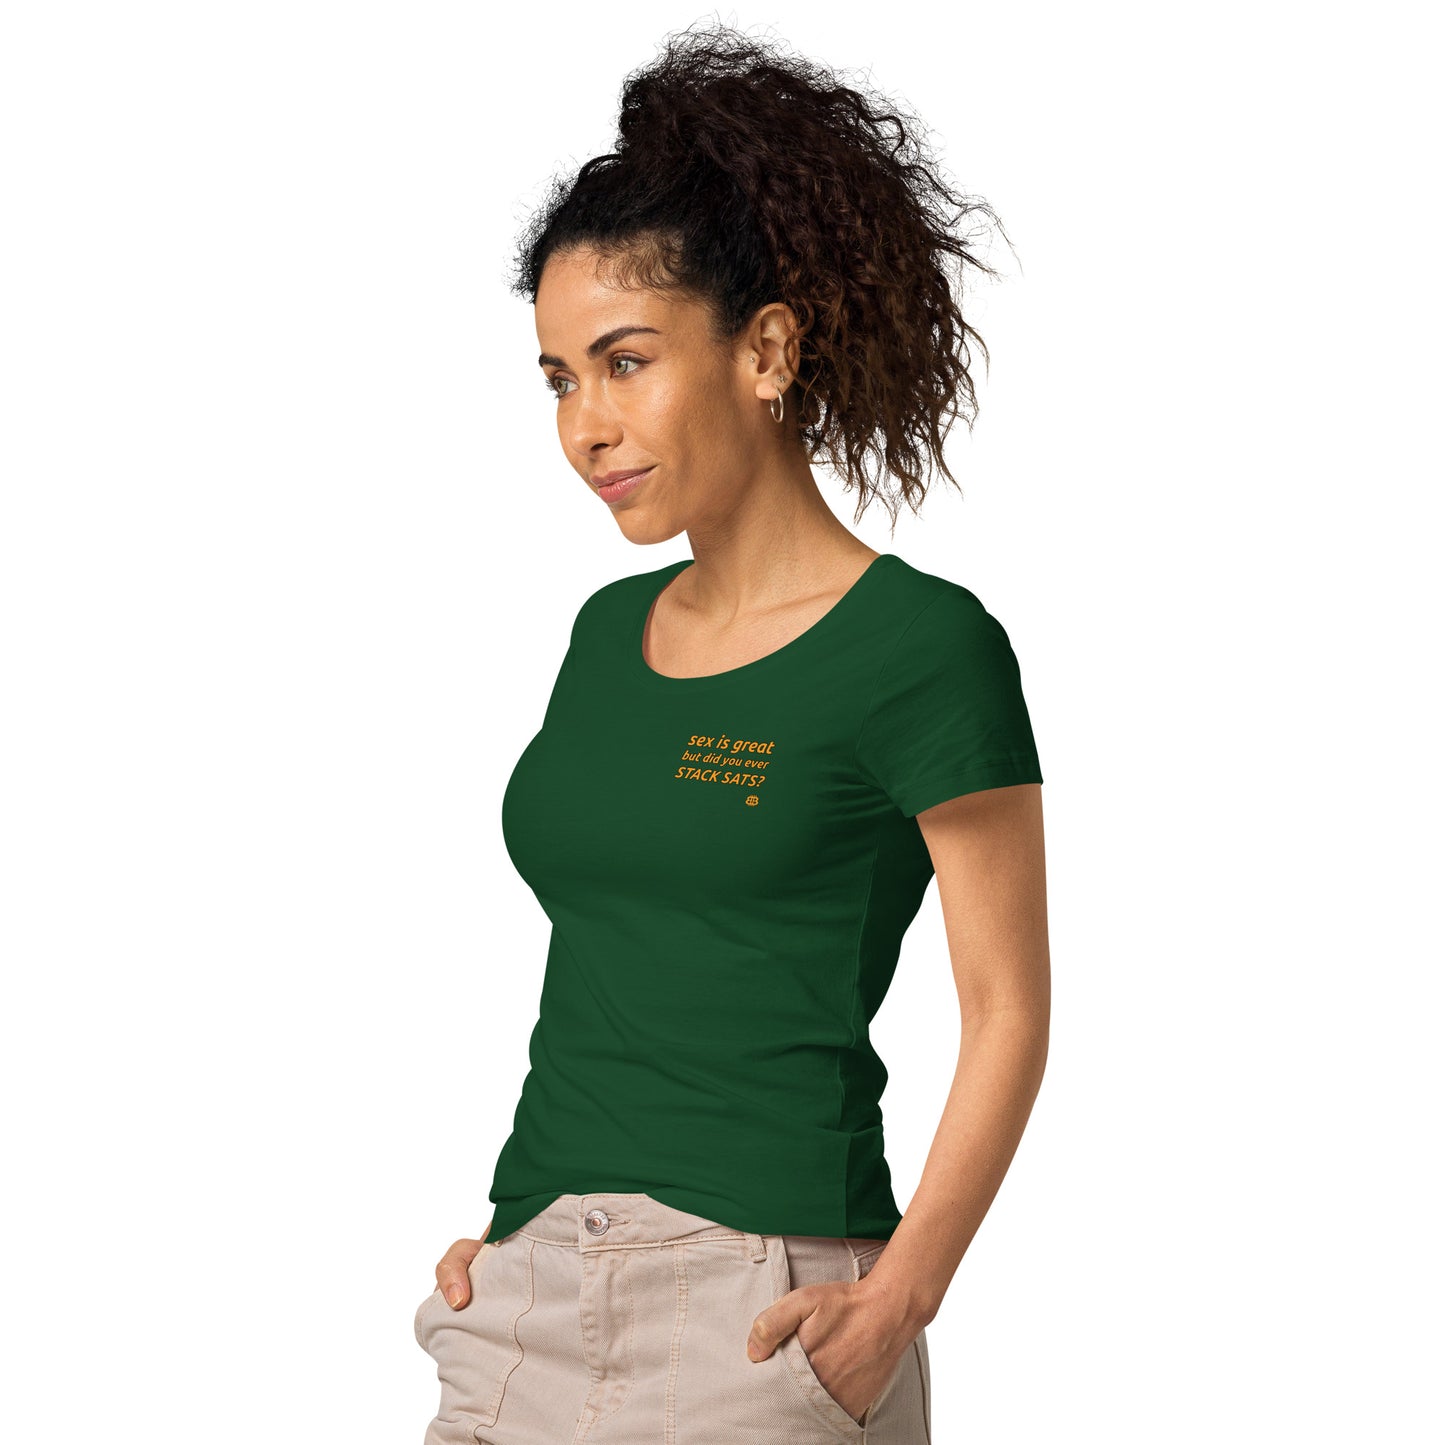 Camiseta orgánica de mujer de manga corta y cuello ancho "Sex_sm"